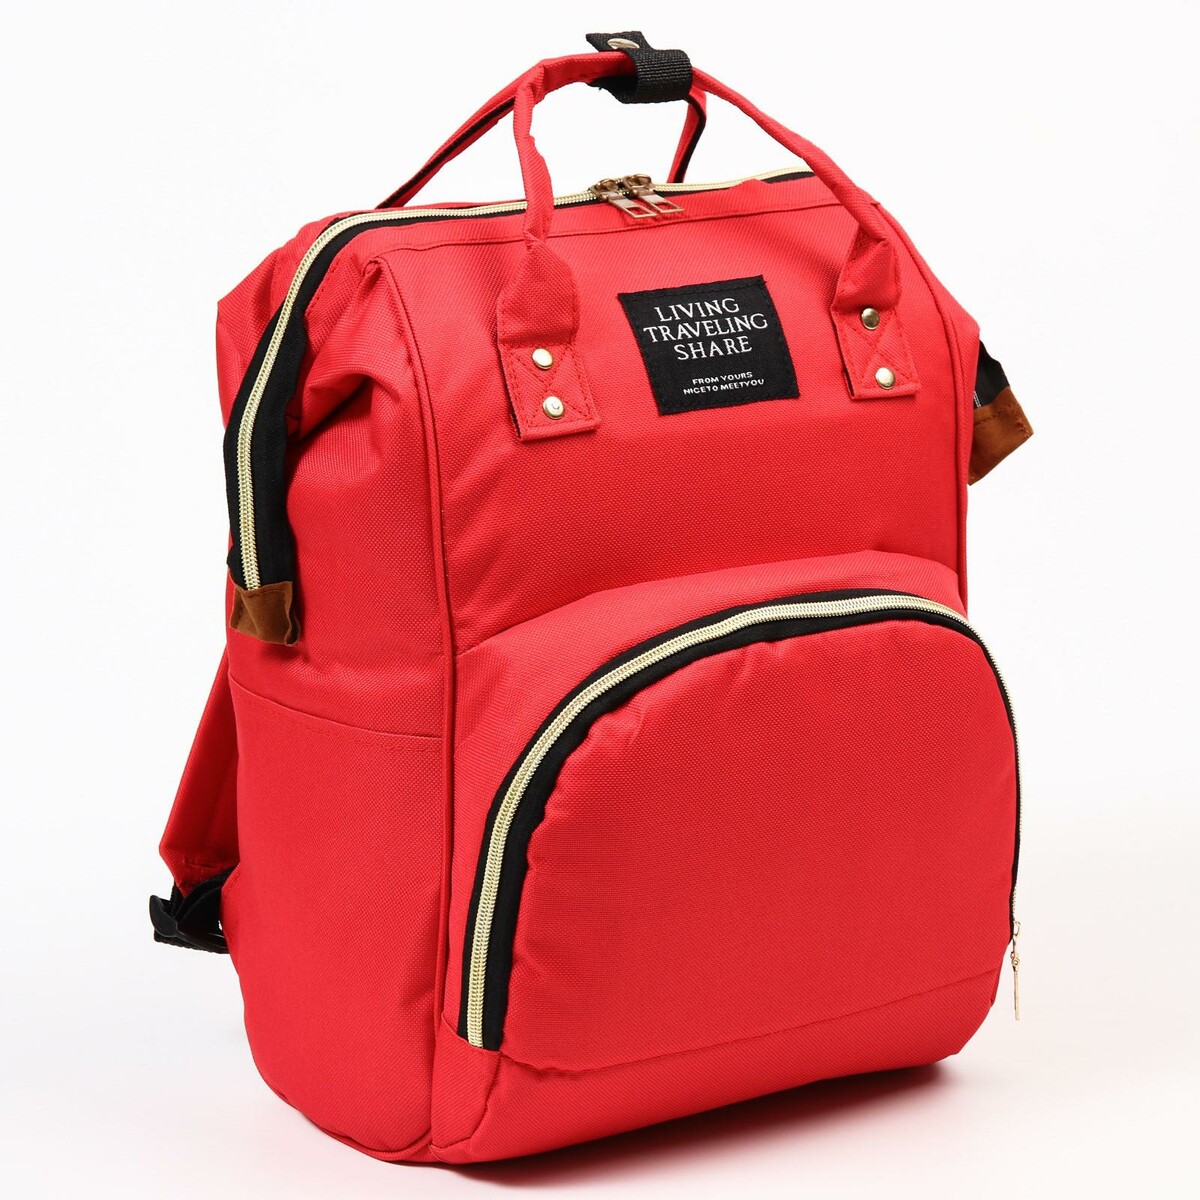 Рюкзак женский с термокарманом, термосумка - портфель, цвет красный рюкзак kingkong i 10 wb 9062 черн средний фоторюкзак